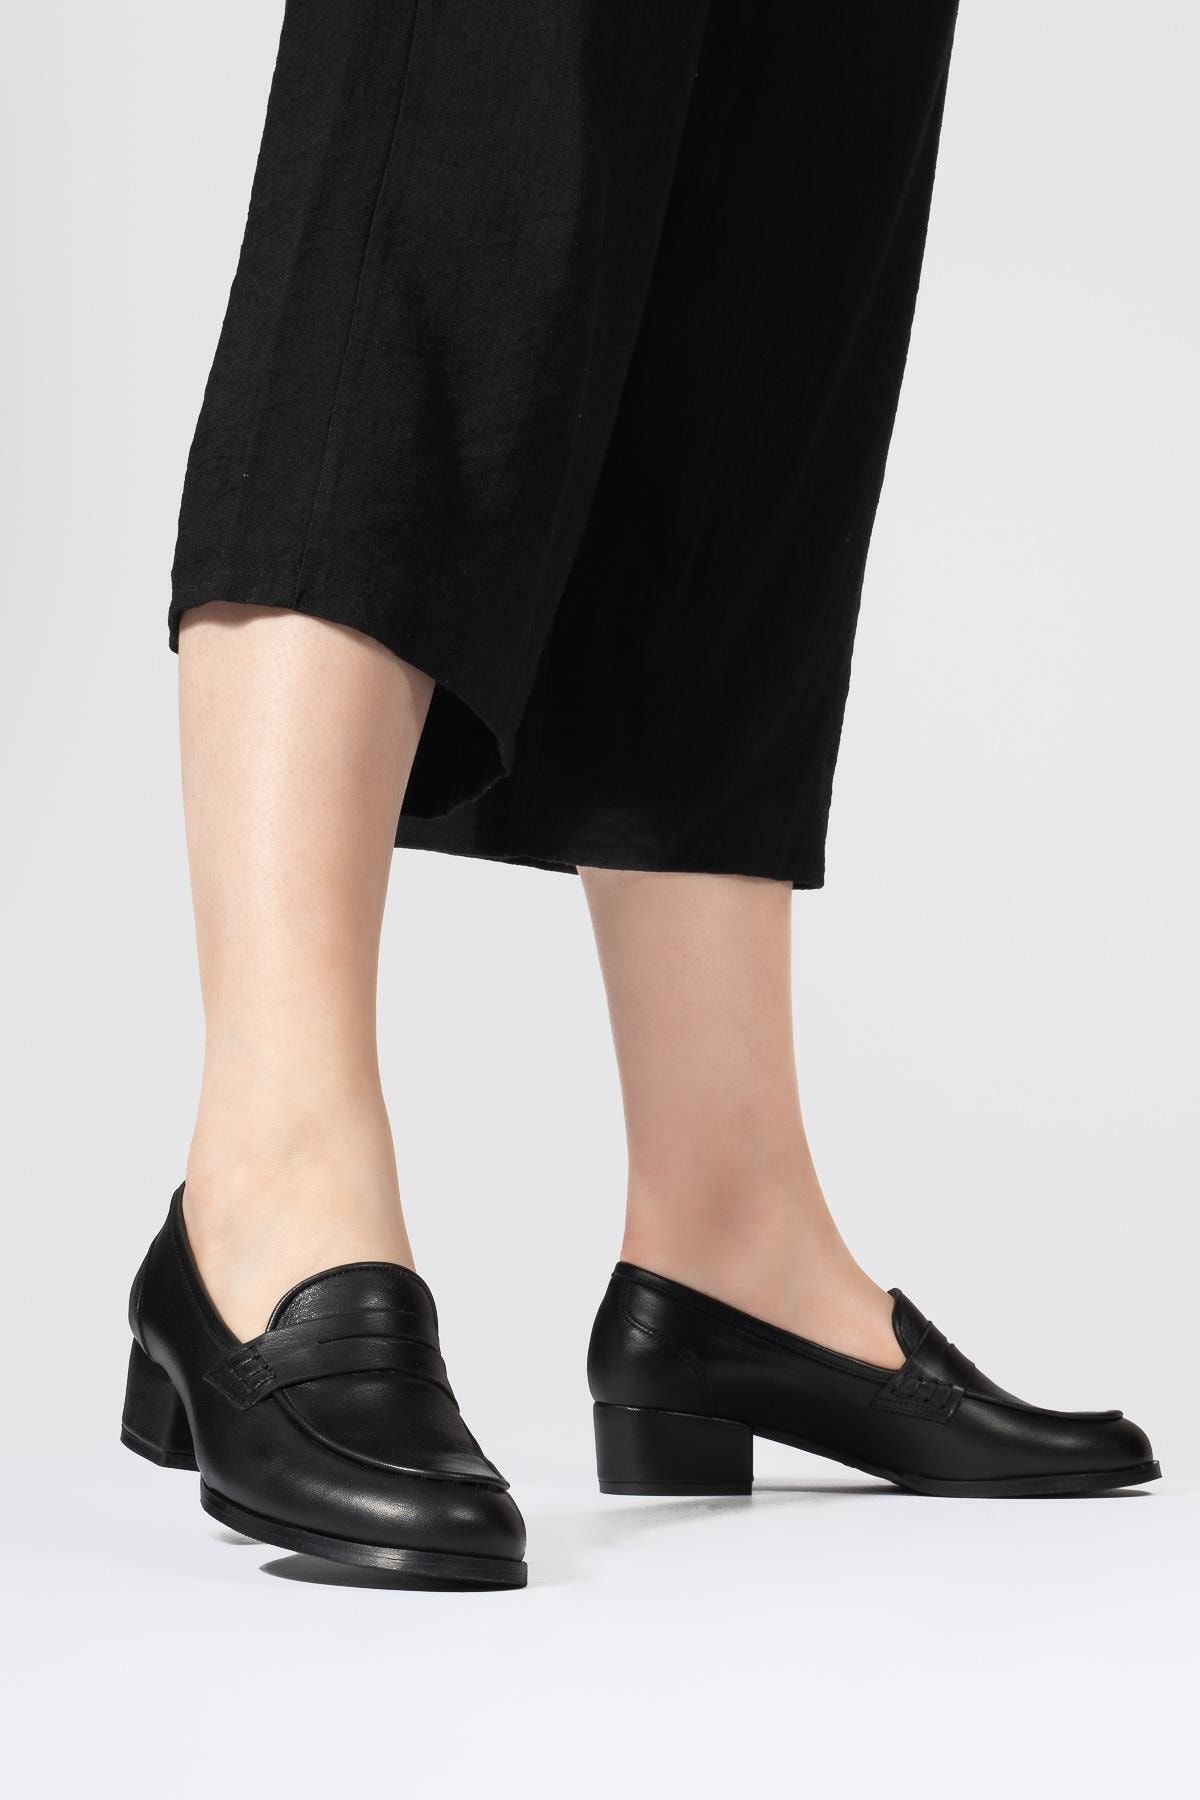 CZ London Kadın Siyah Hakiki Deri Topuklu Yuvarlak Burun Loafer Ayakkabı